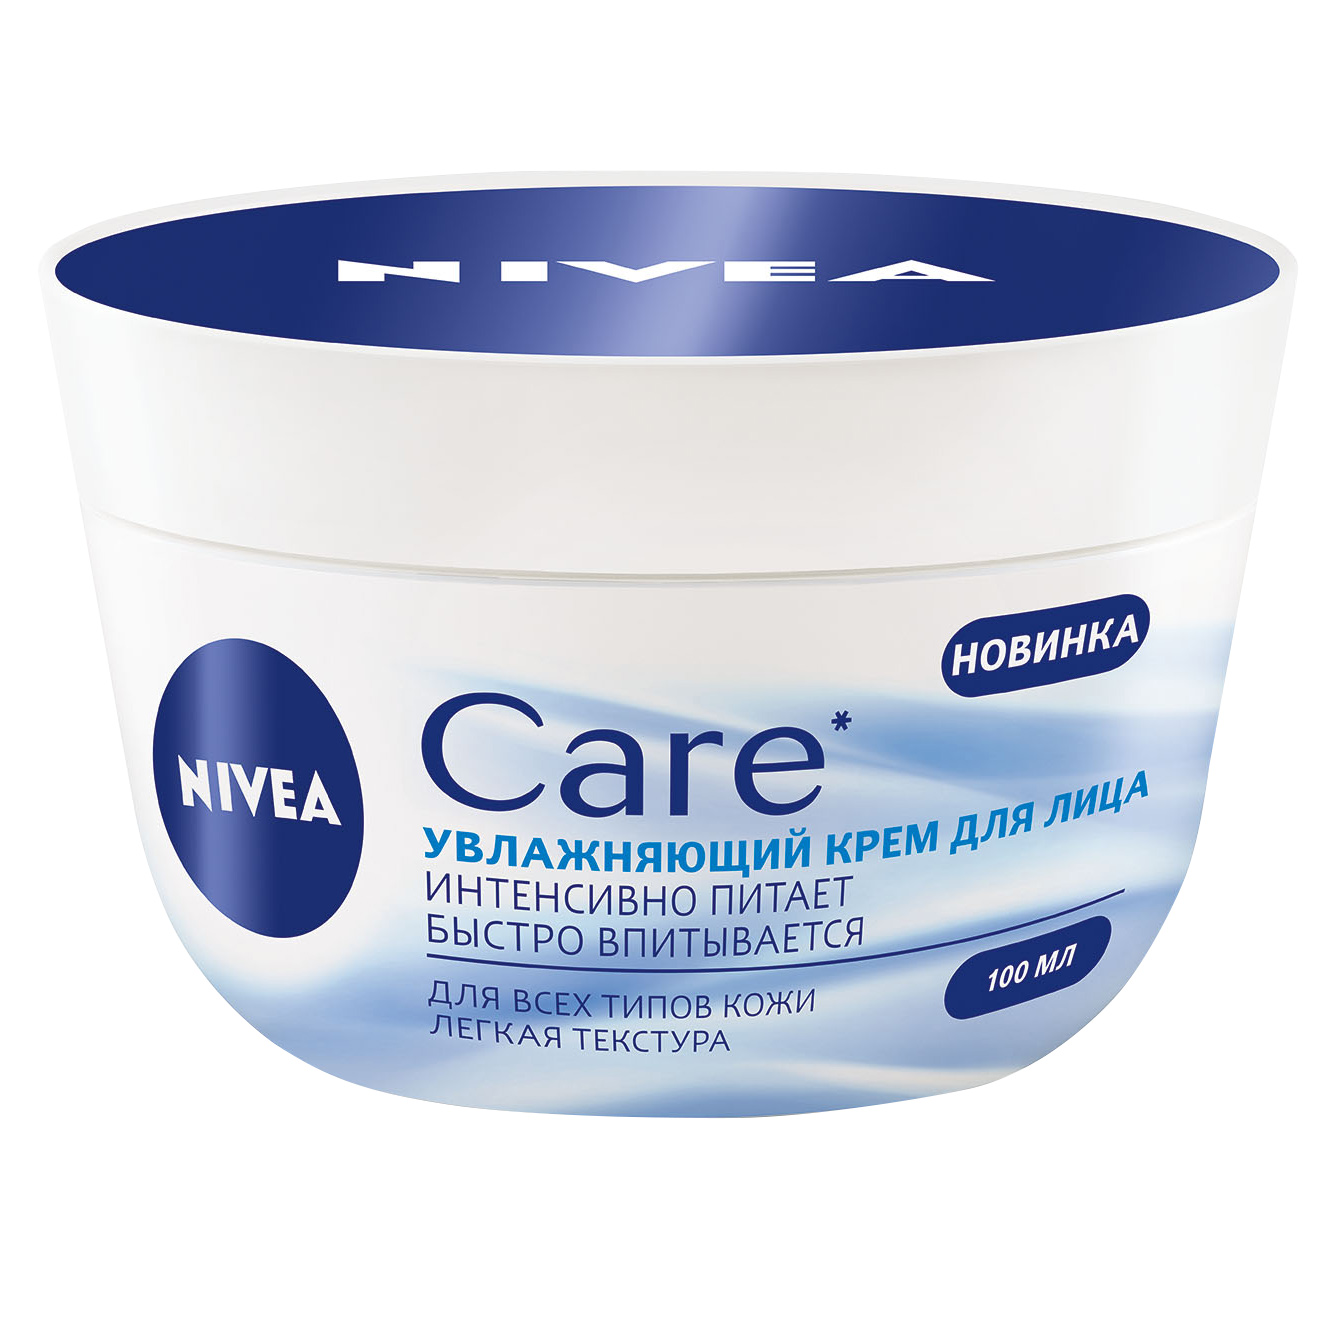 Питательный крем-легкость Nivea Care для всех типов кожи 100 мл крем для лица nivea care для чувствительной кожи 100 мл